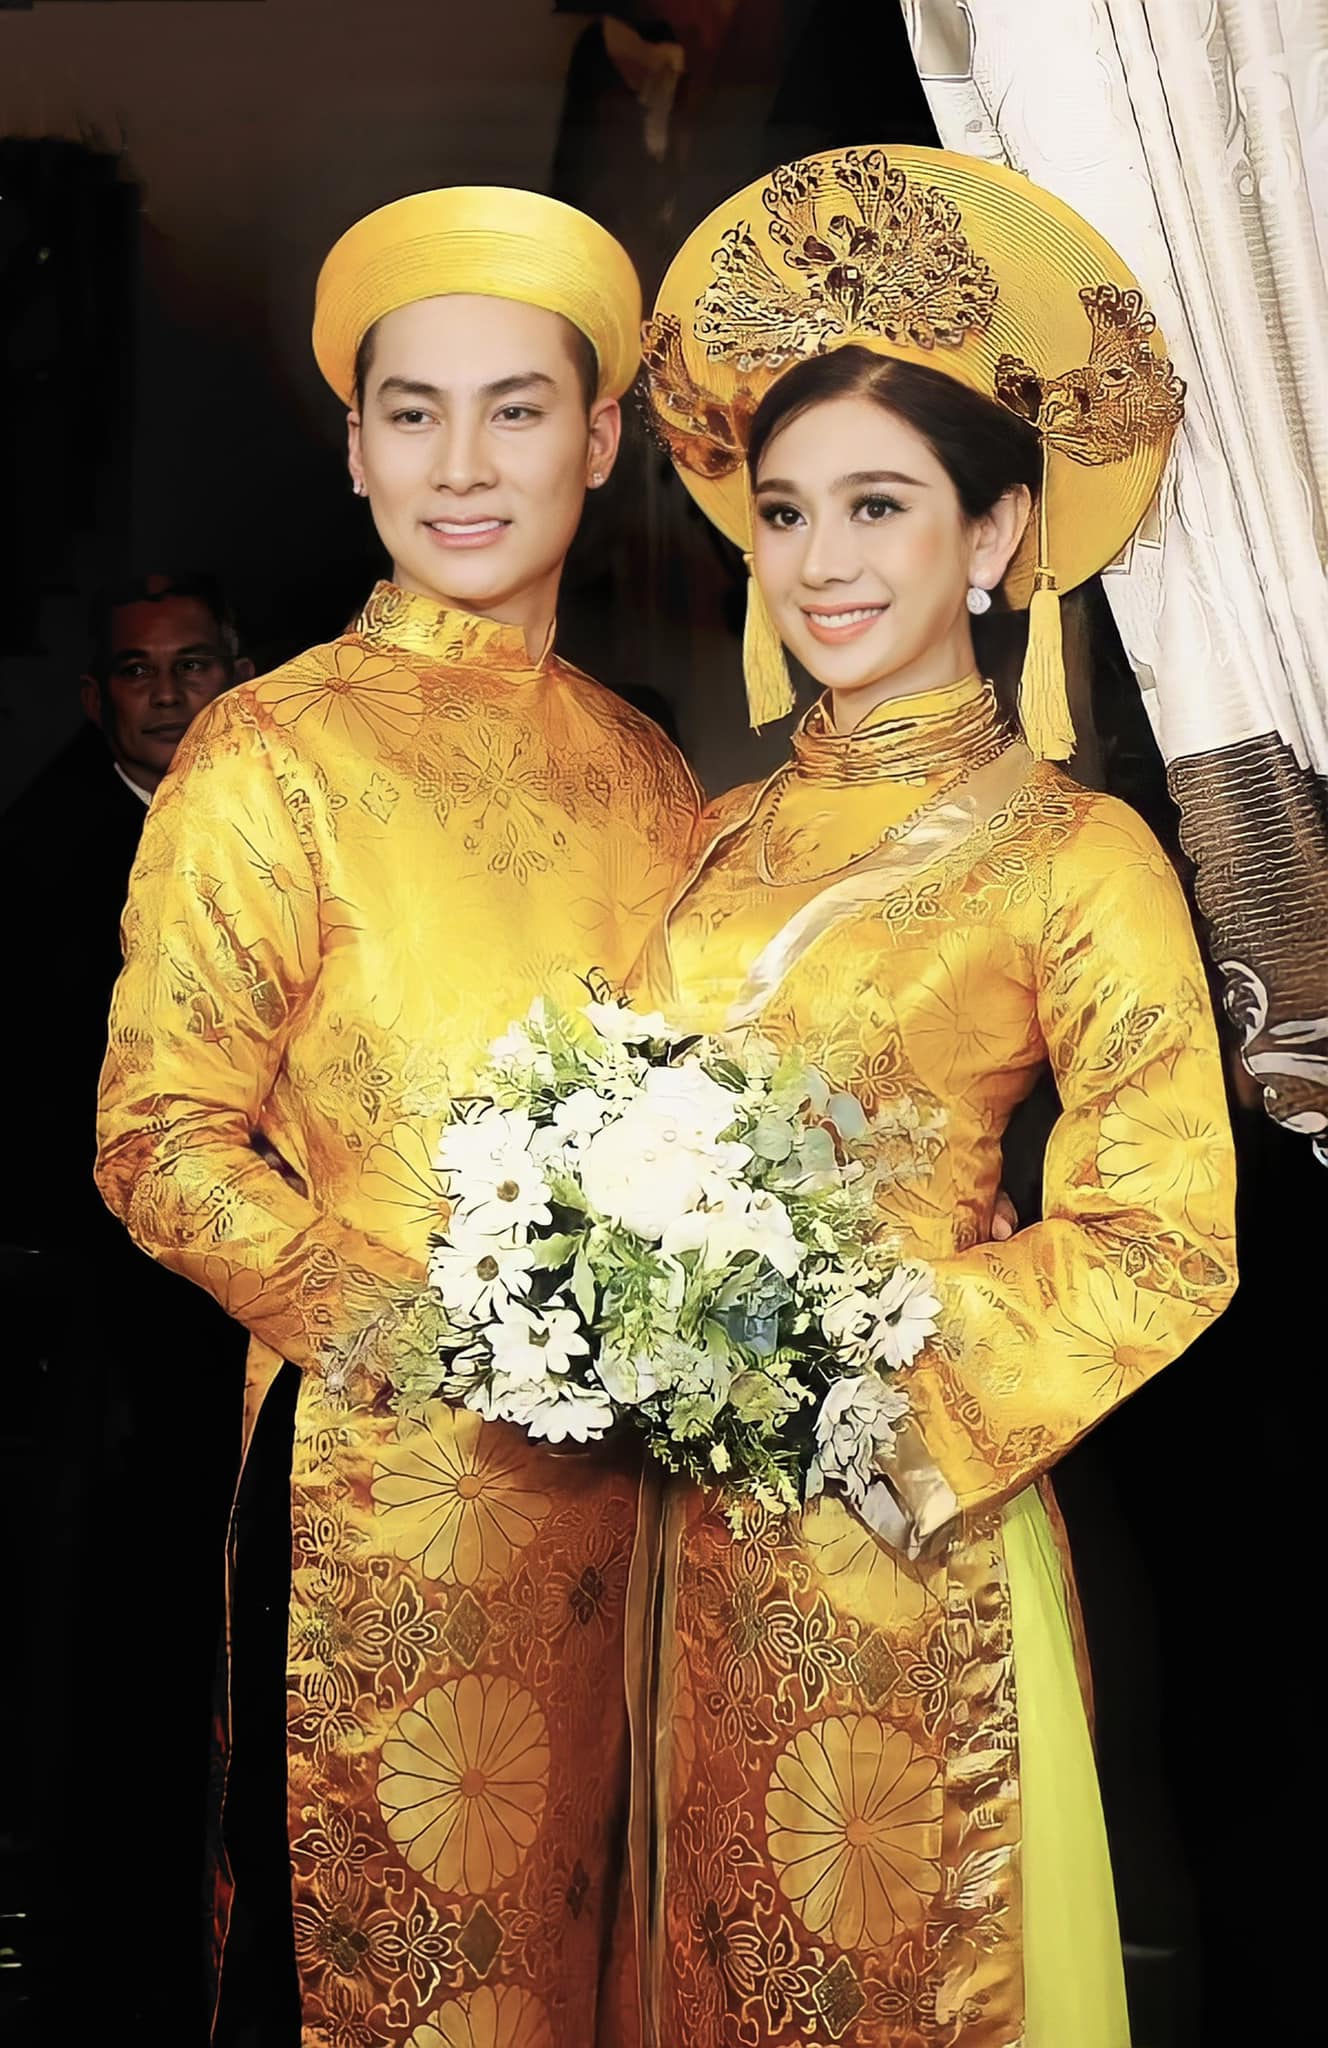 Lâm Khánh Chi đăng hình kỉ niệm 5 năm ngày cưới với chồng cũ Trần Phi Hùng.